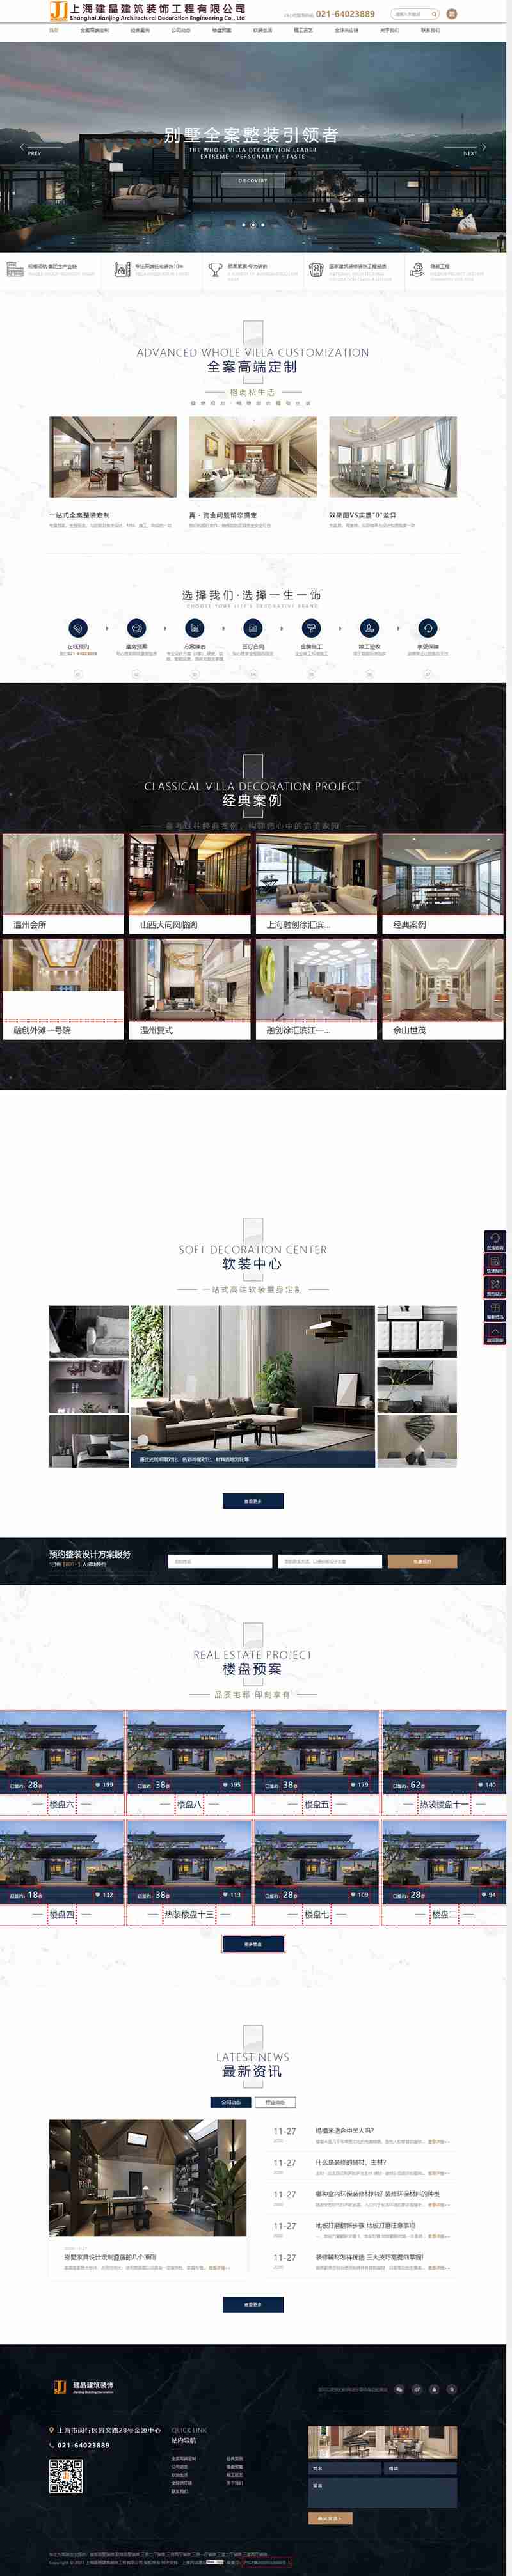 上海建晶建筑裝飾工程有限公司網站制作效果.jpg